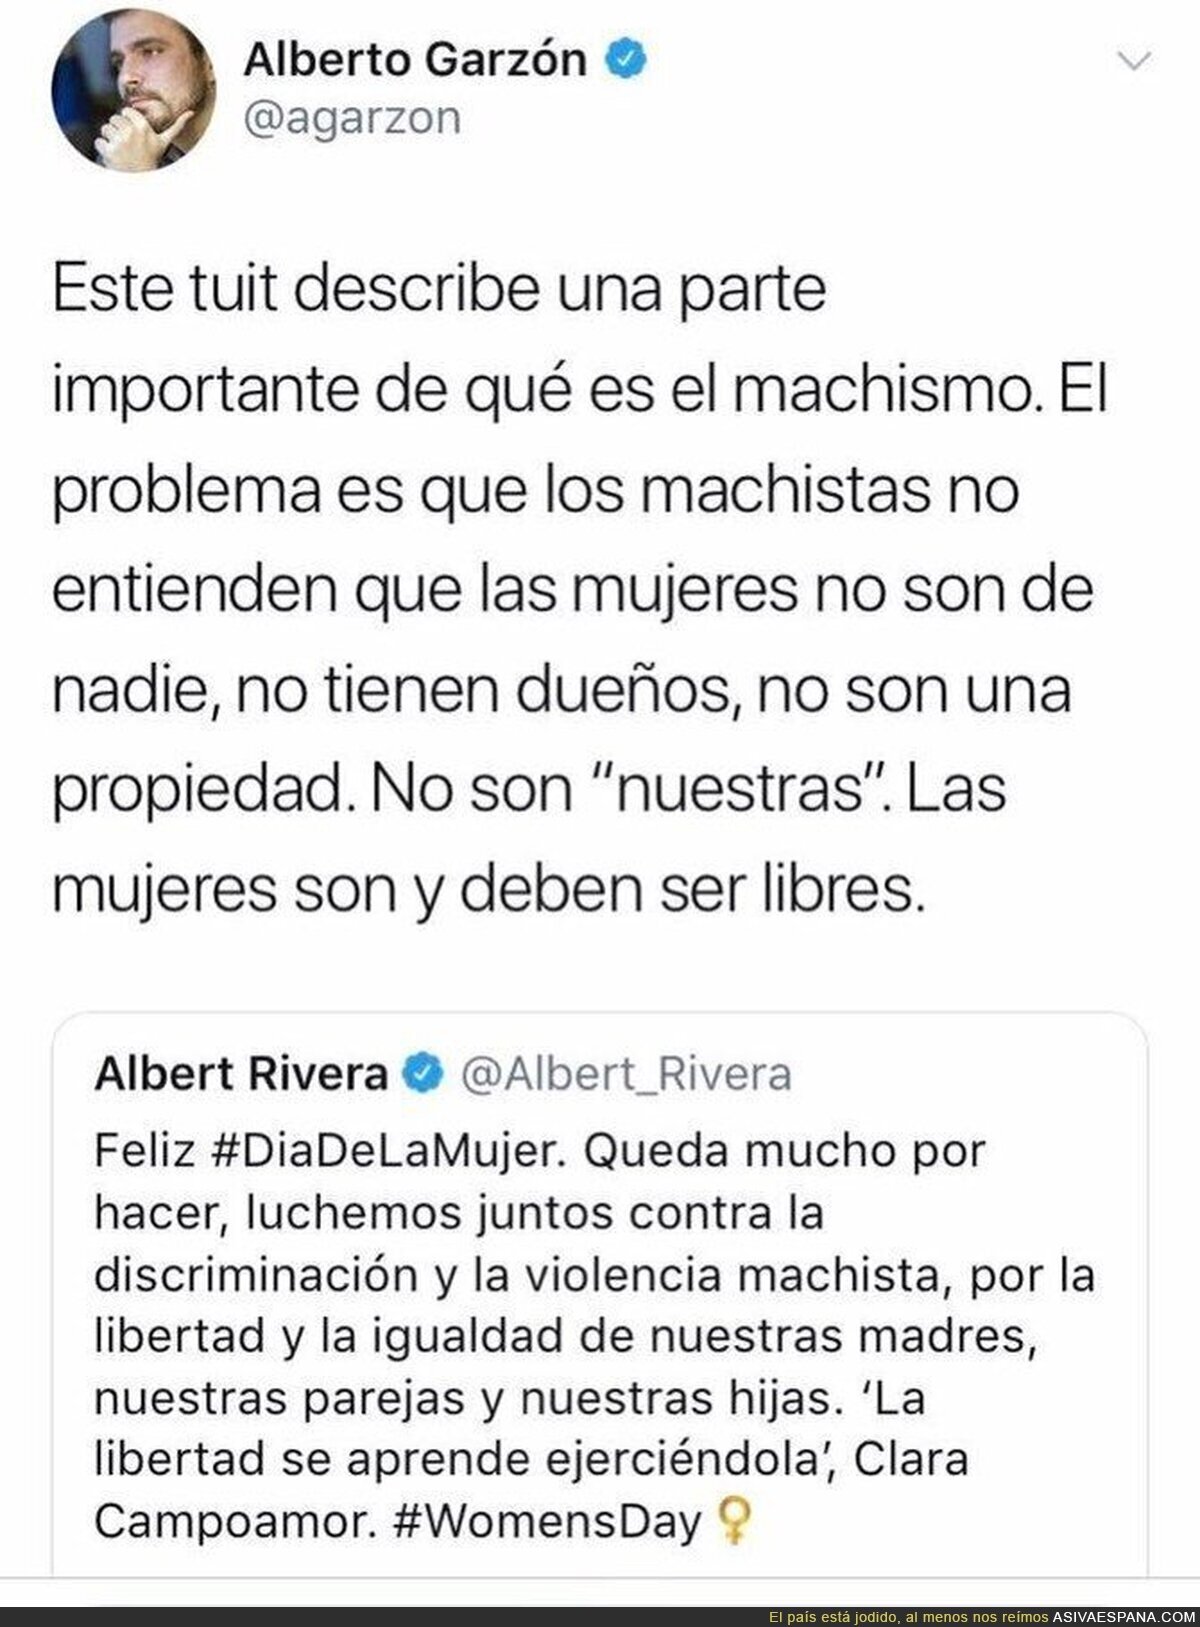 La respuesta de Alberto Garzón al "nuestras" de Albert Rivera